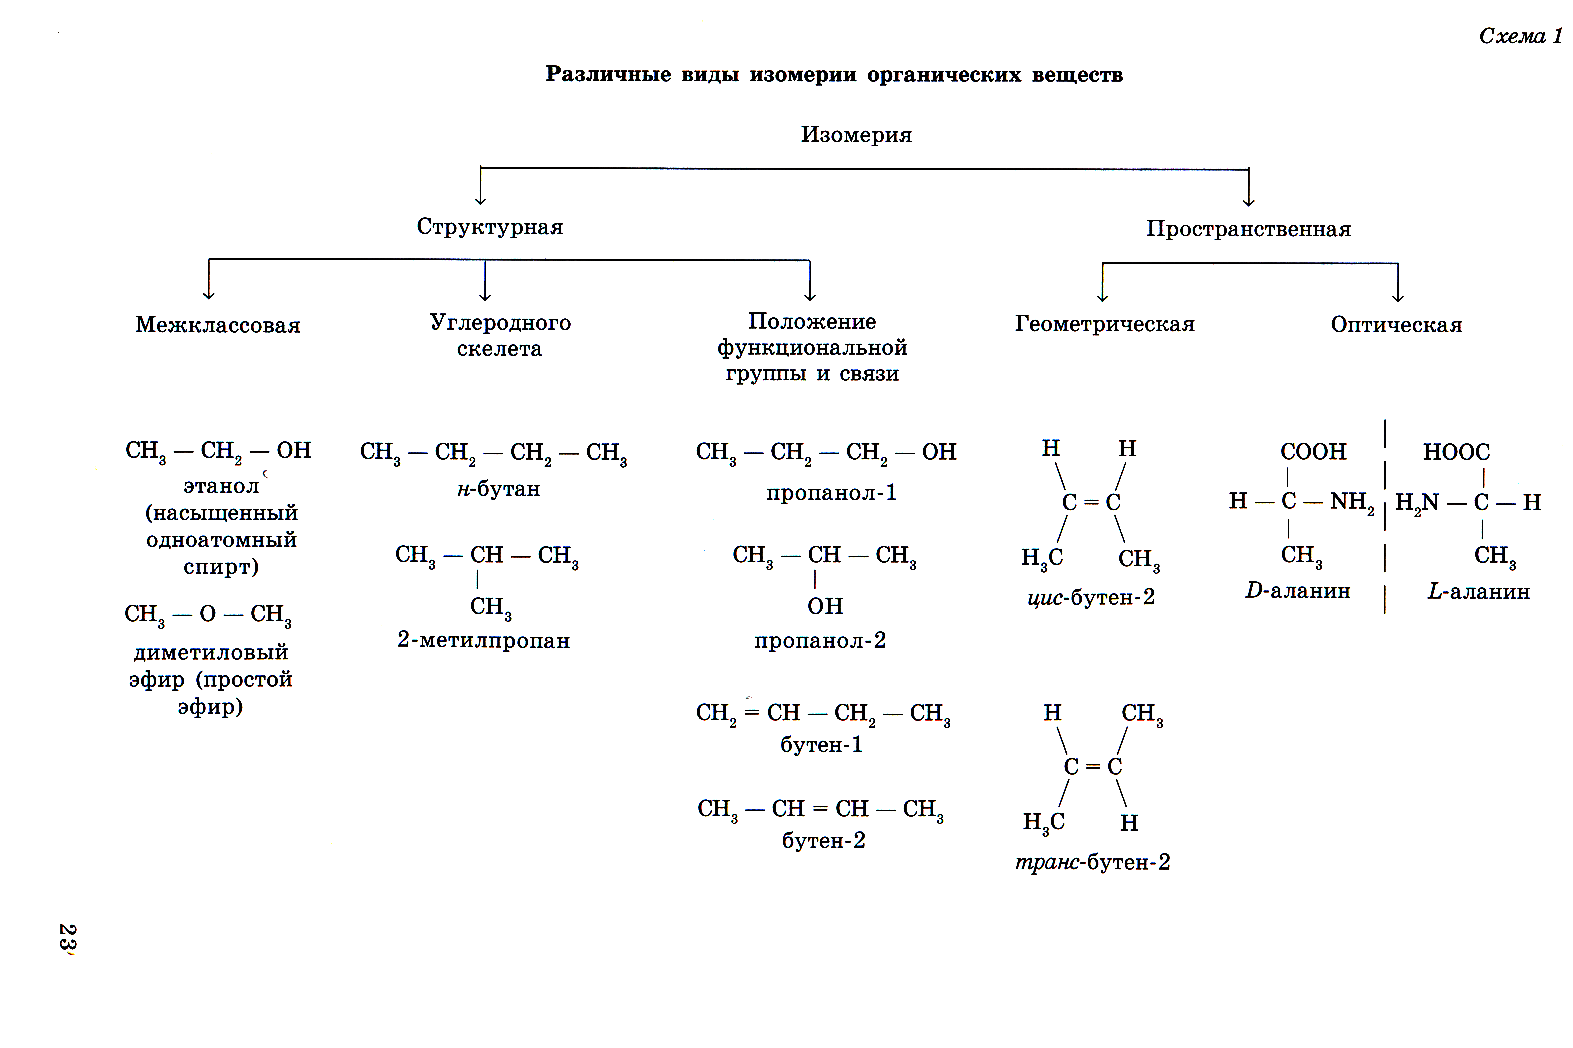 Структурная и пространственная изомерия органических соединений